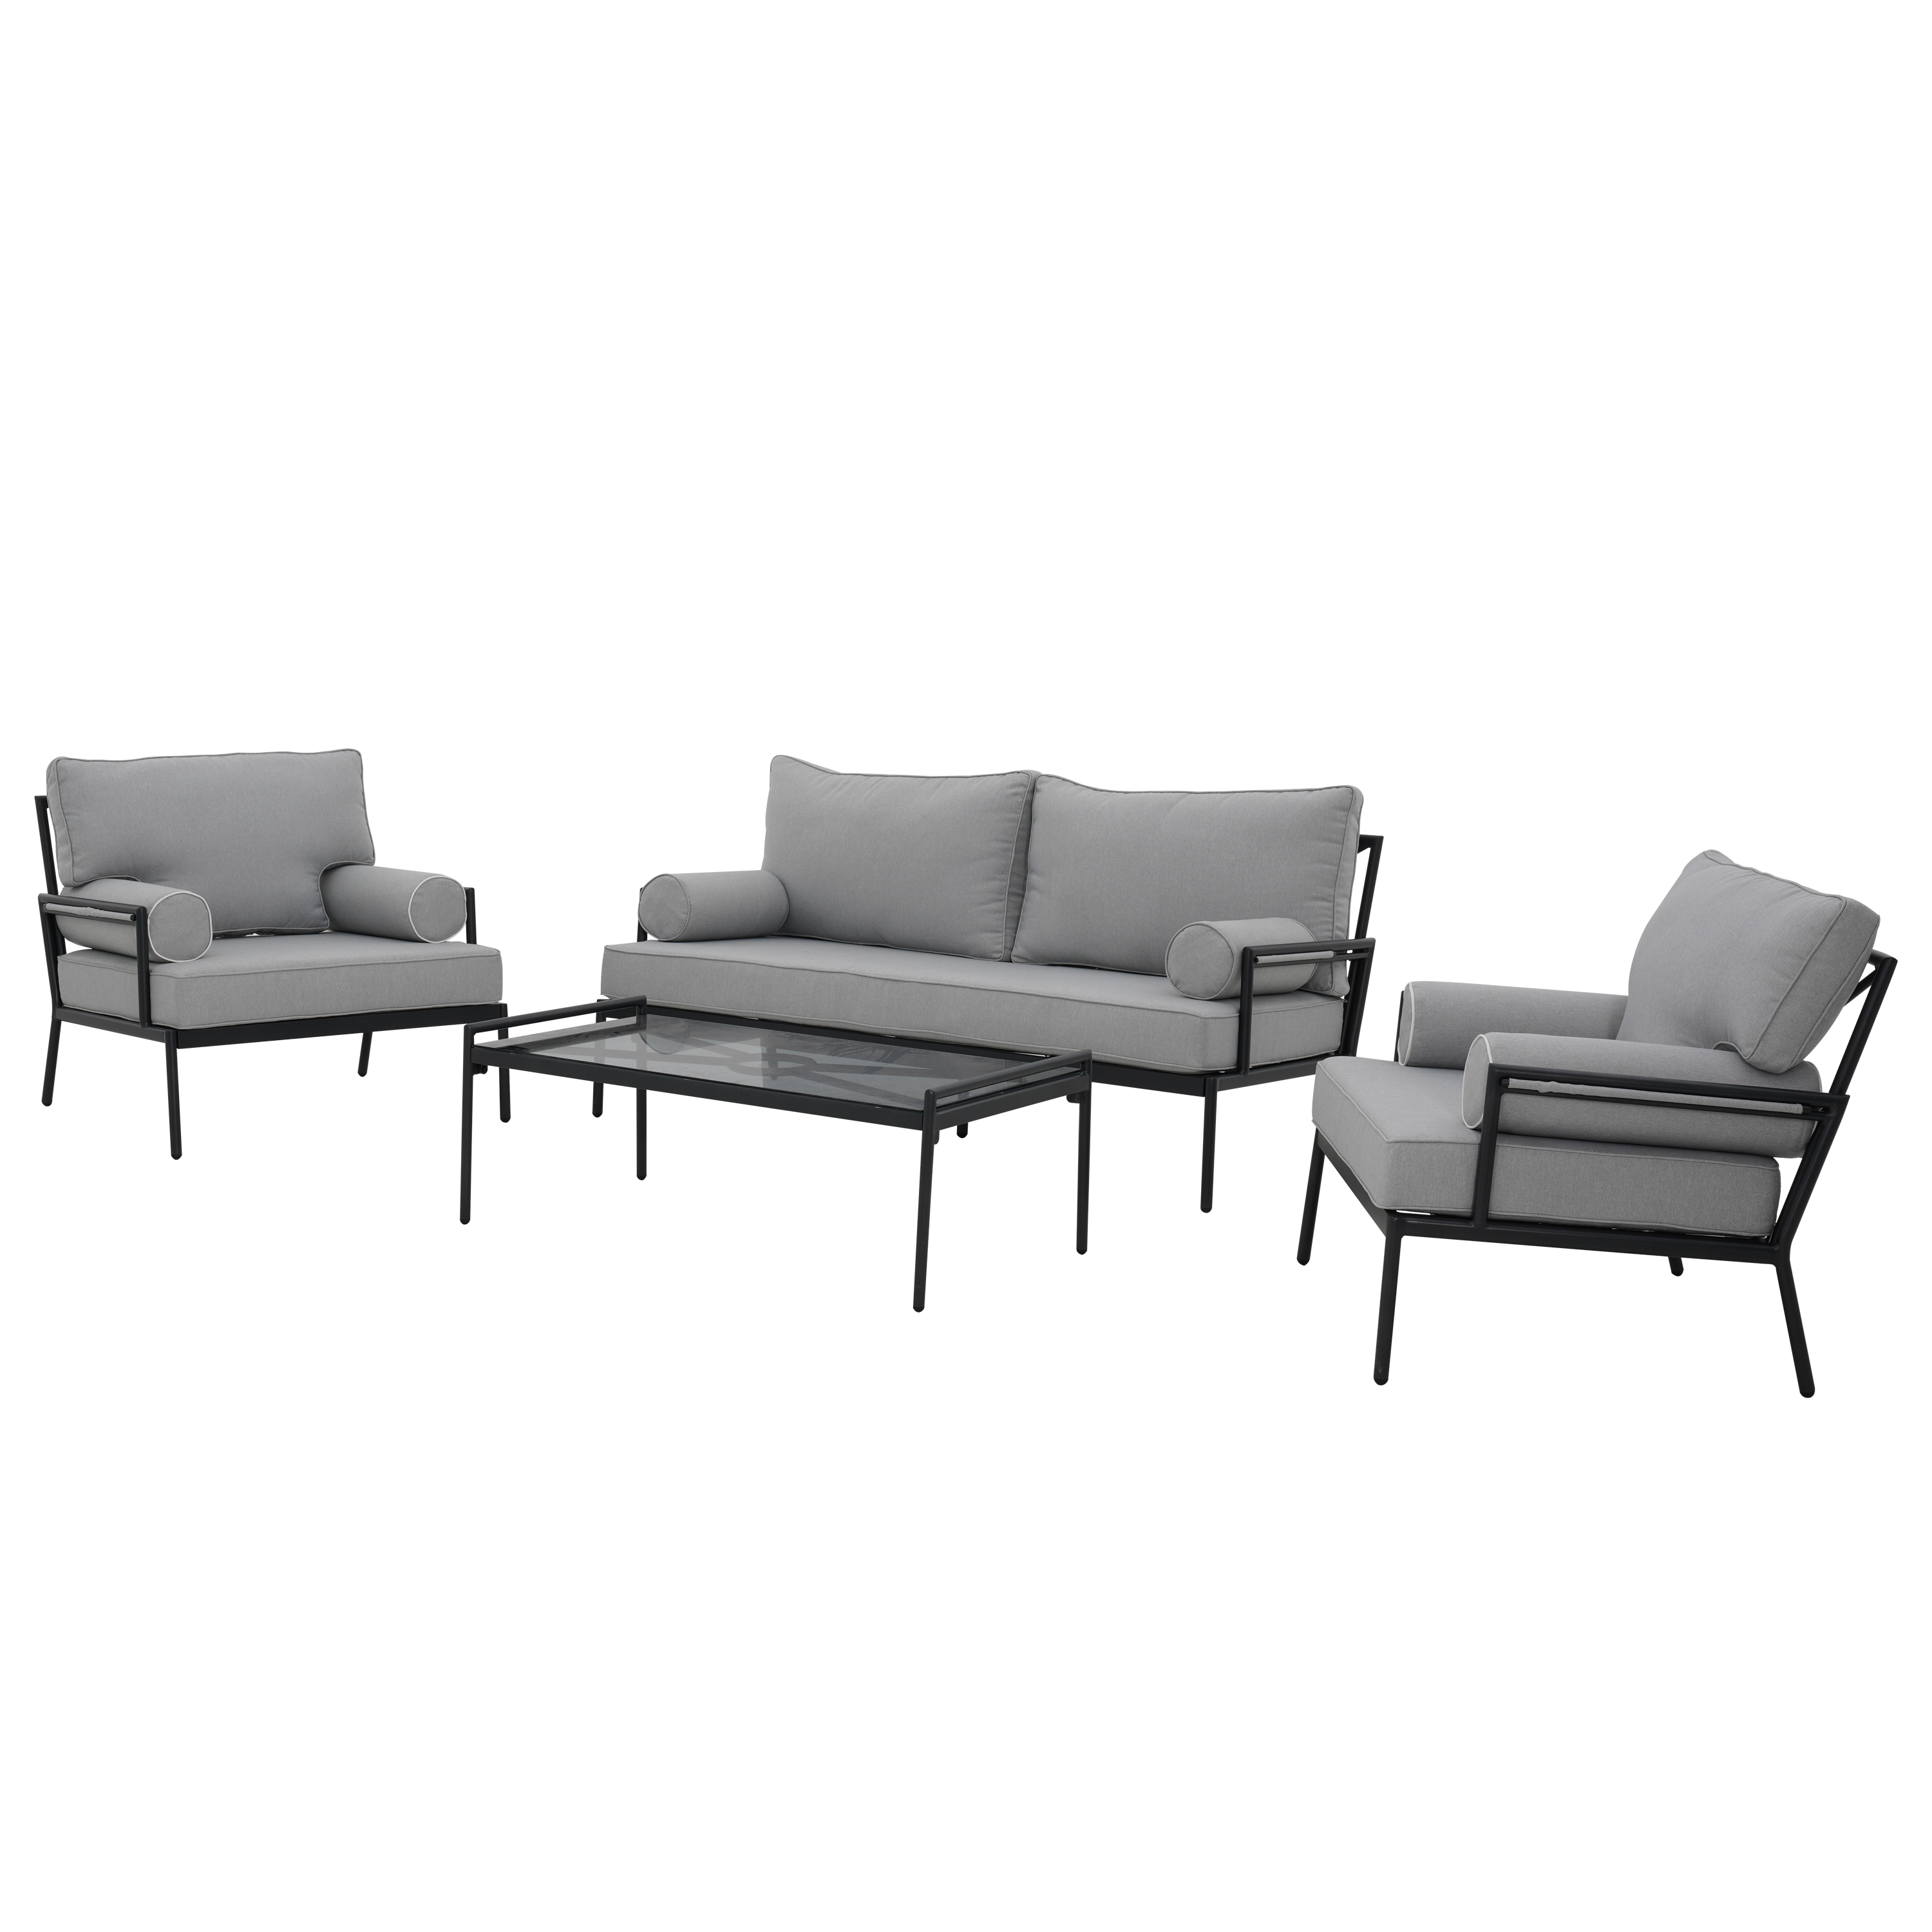 84012897 Набор садовой мебели Onyx алюминий/полиэстер/стекло серый: стол, диван и 2 кресла STLM-0046157 NATERIAL